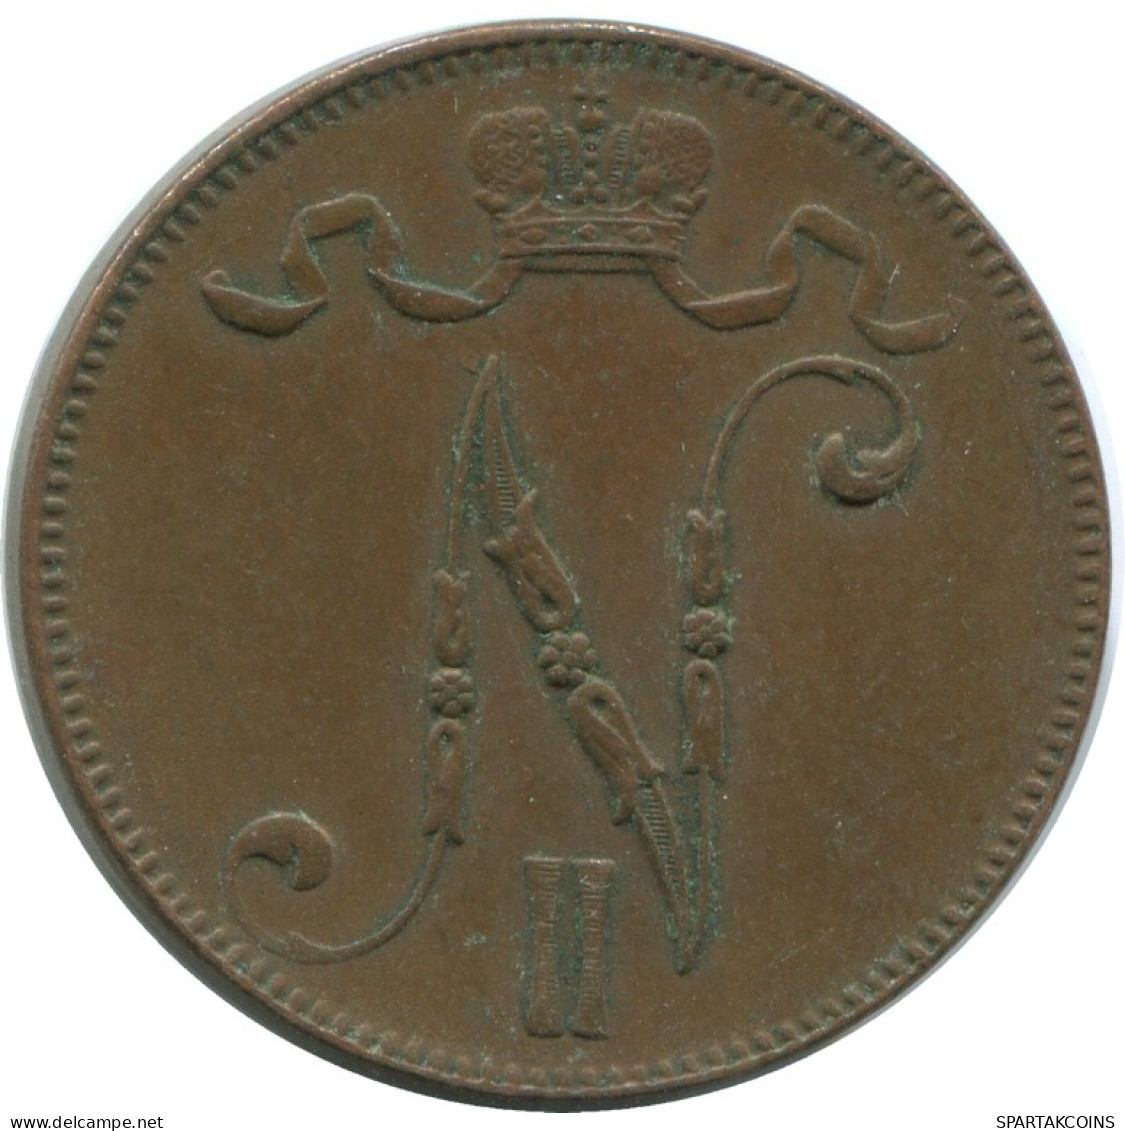 5 PENNIA 1916 FINLAND Coin RUSSIA EMPIRE #AB243.5.U.A - Finlande